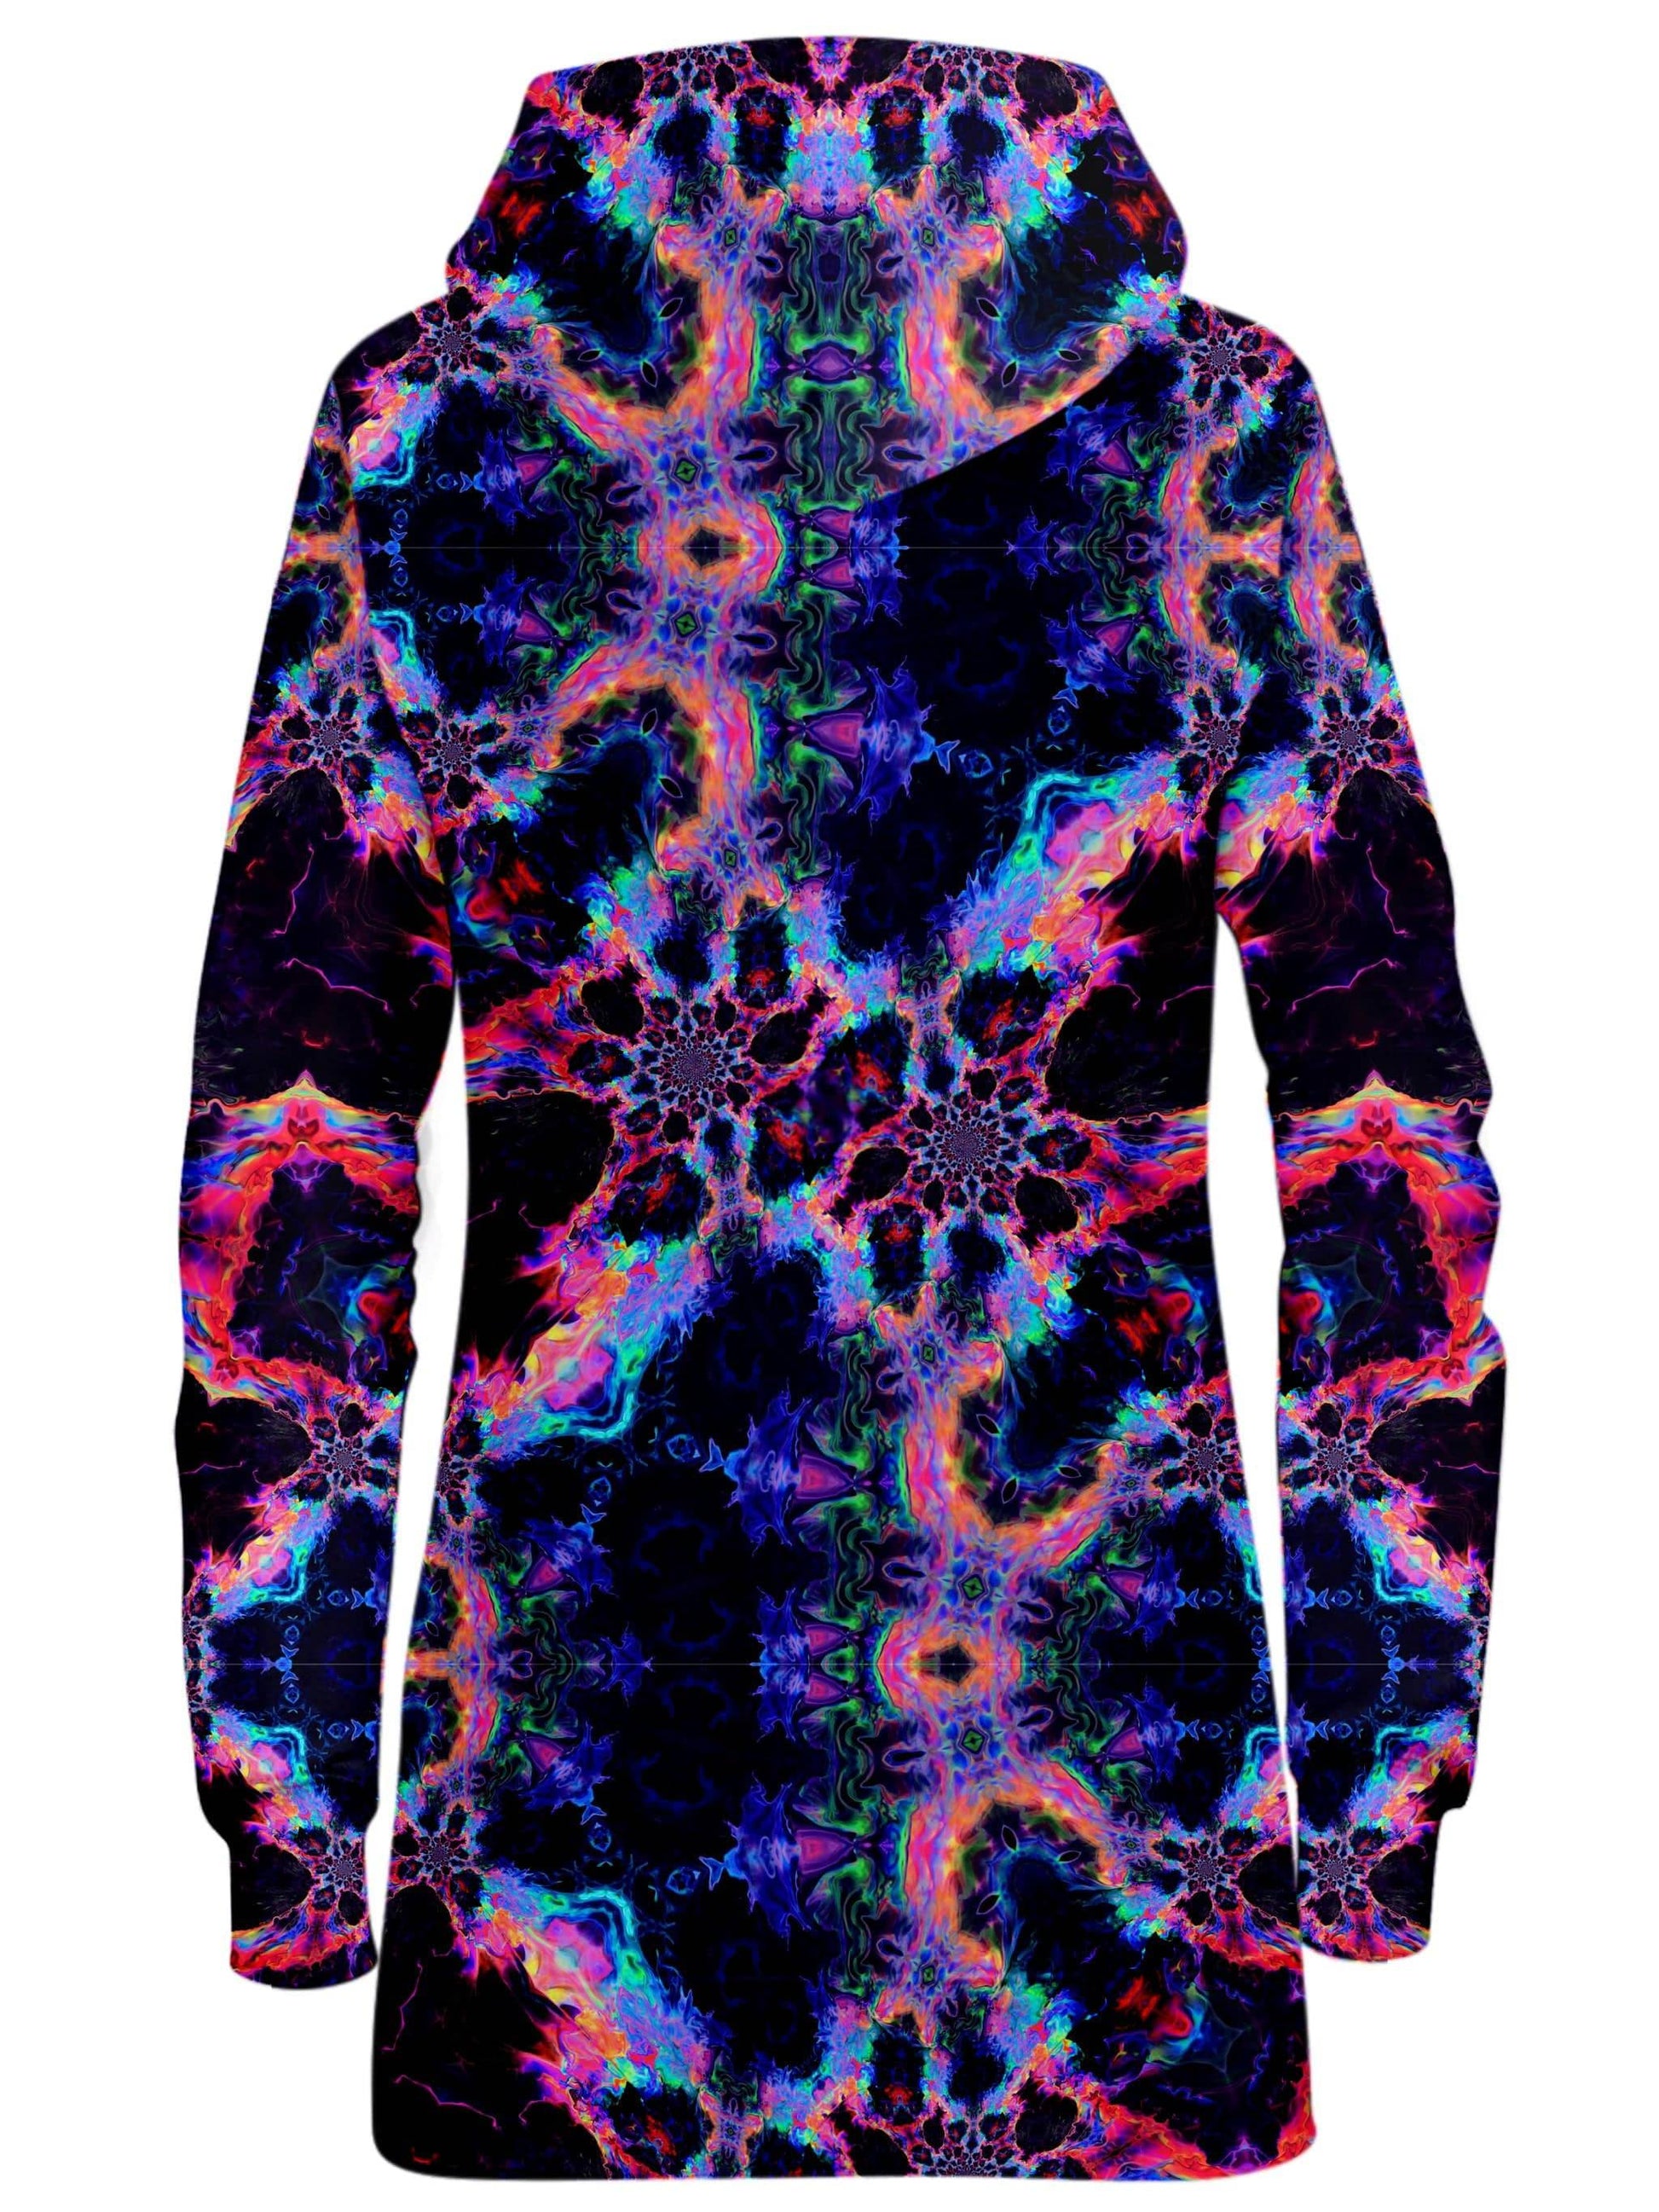 Trip Nebula Hoodie Dress, Psychedelic Pourhouse, | iEDM